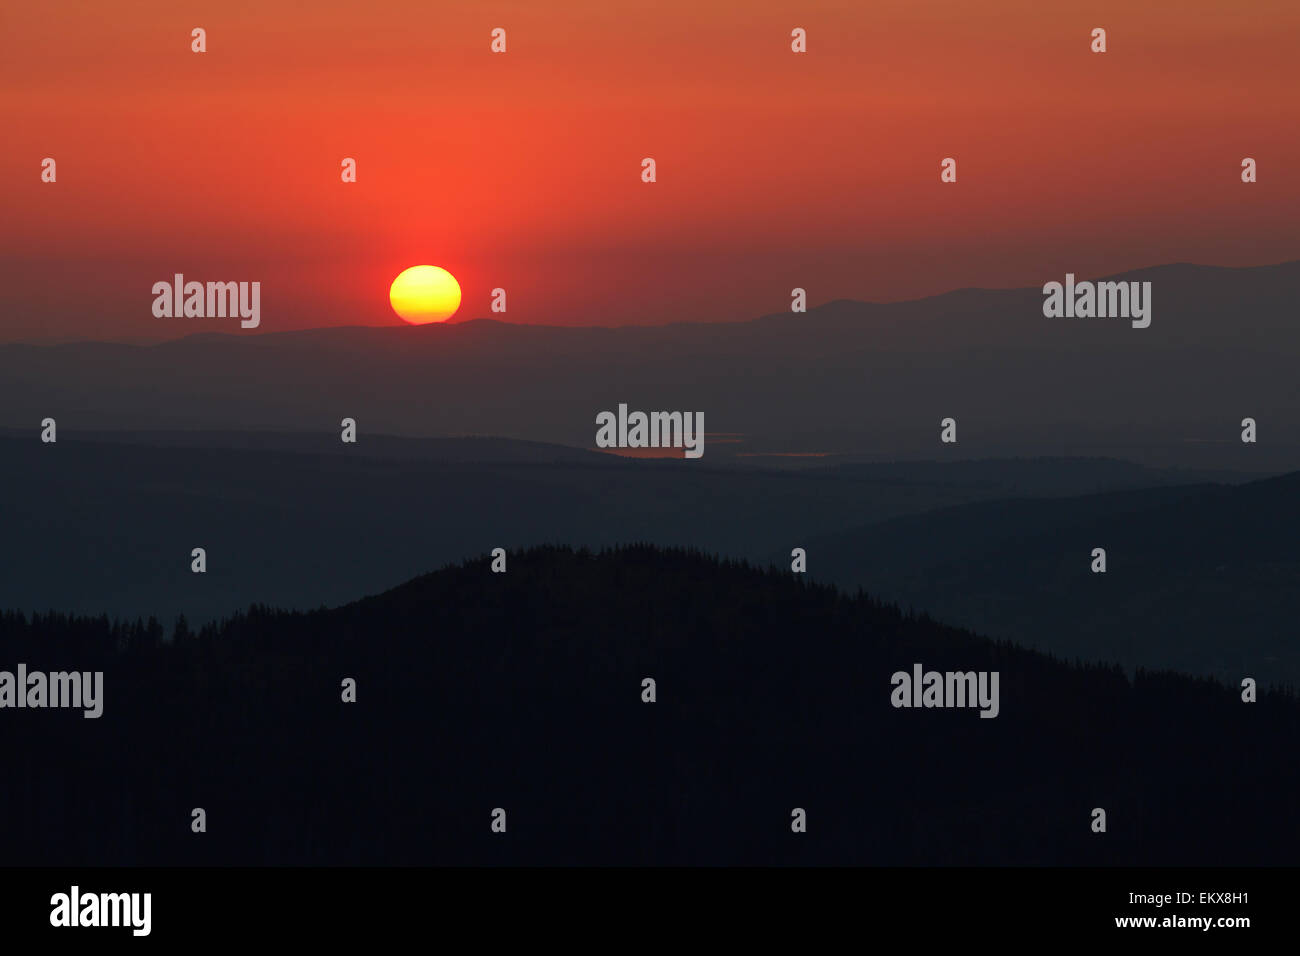 Impostazione di colore arancione Sun sulle lontane montagne, vista da alte montagne tatry Foto Stock